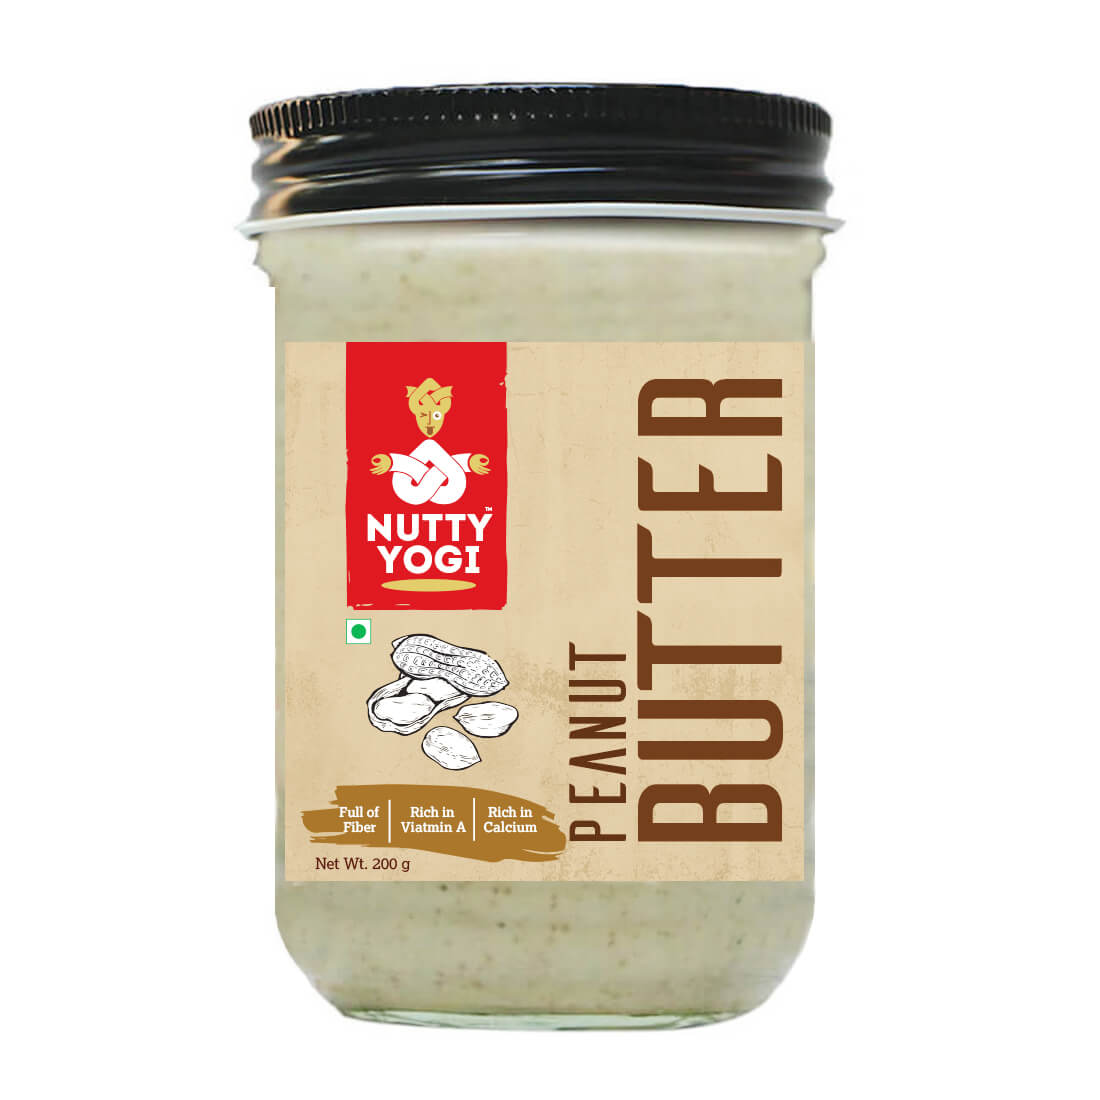 Nutty Yogi Peanut Butter 200g